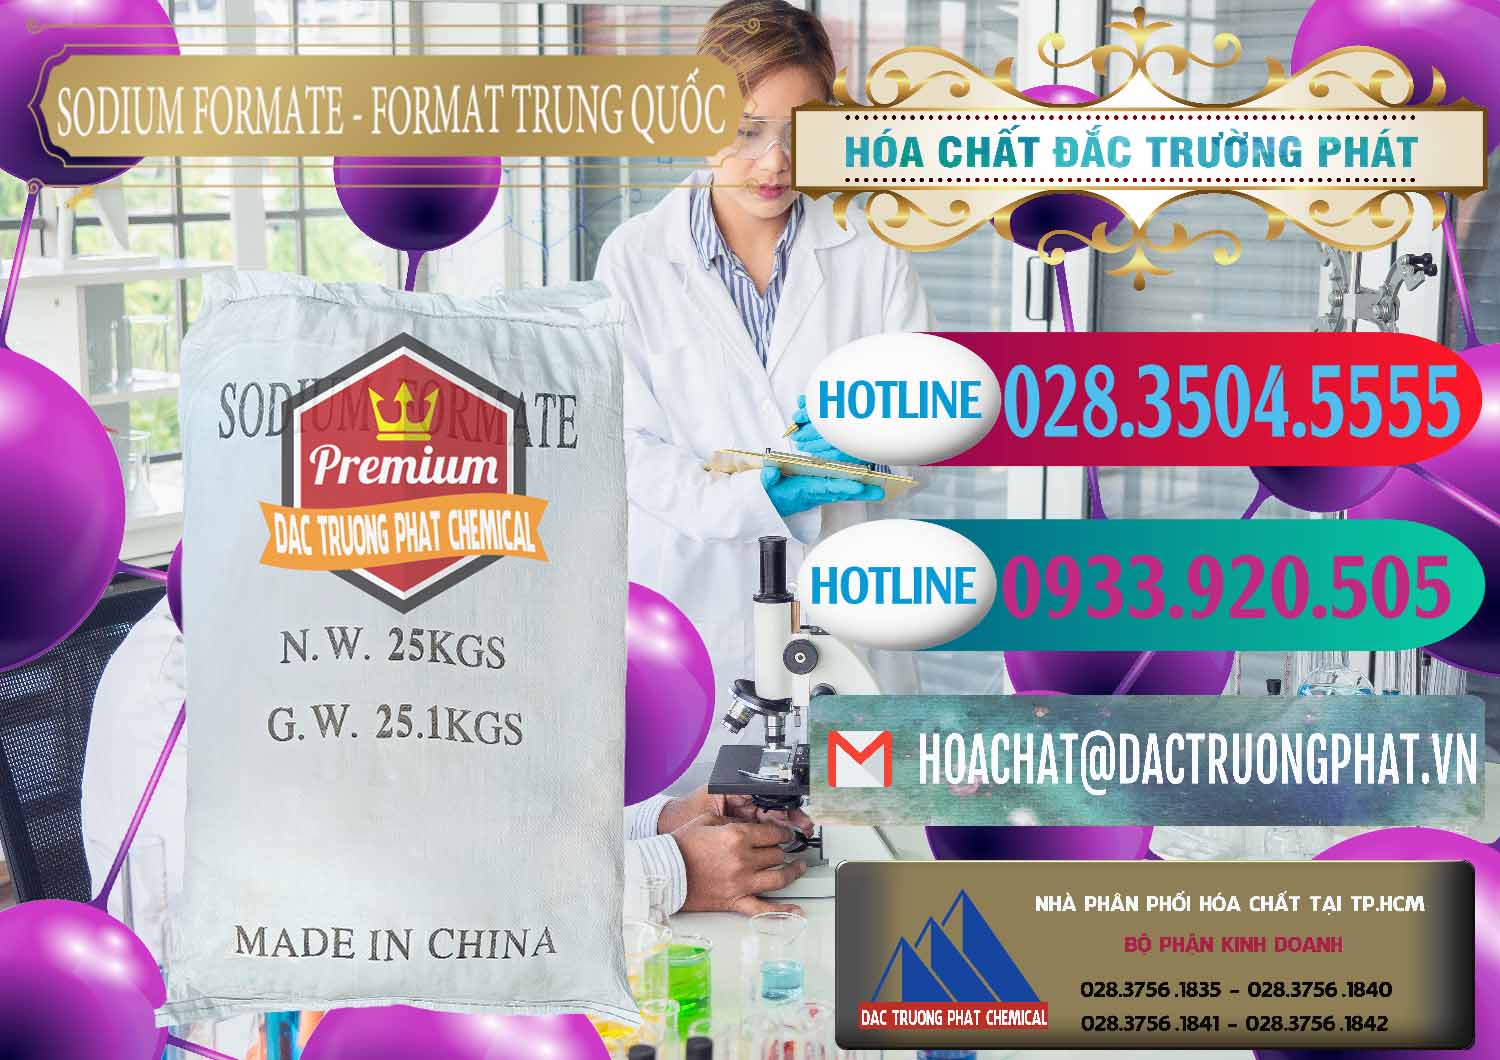 Đơn vị bán và phân phối Sodium Formate - Natri Format Trung Quốc China - 0142 - Nhà phân phối và cung ứng hóa chất tại TP.HCM - truongphat.vn